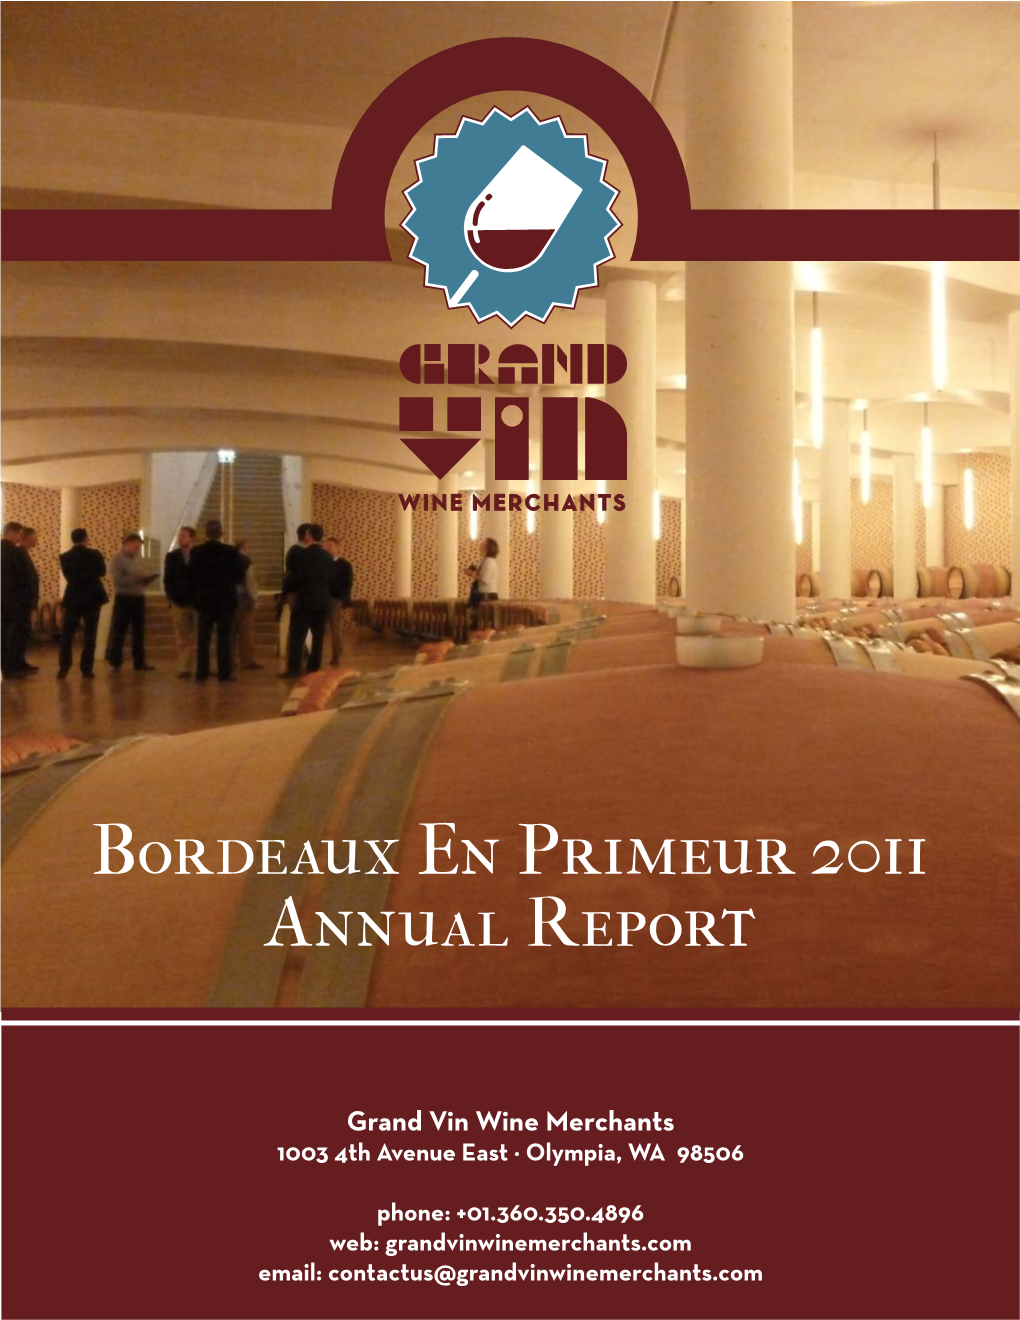 Our 2011 Bordeaux En Primeur Report